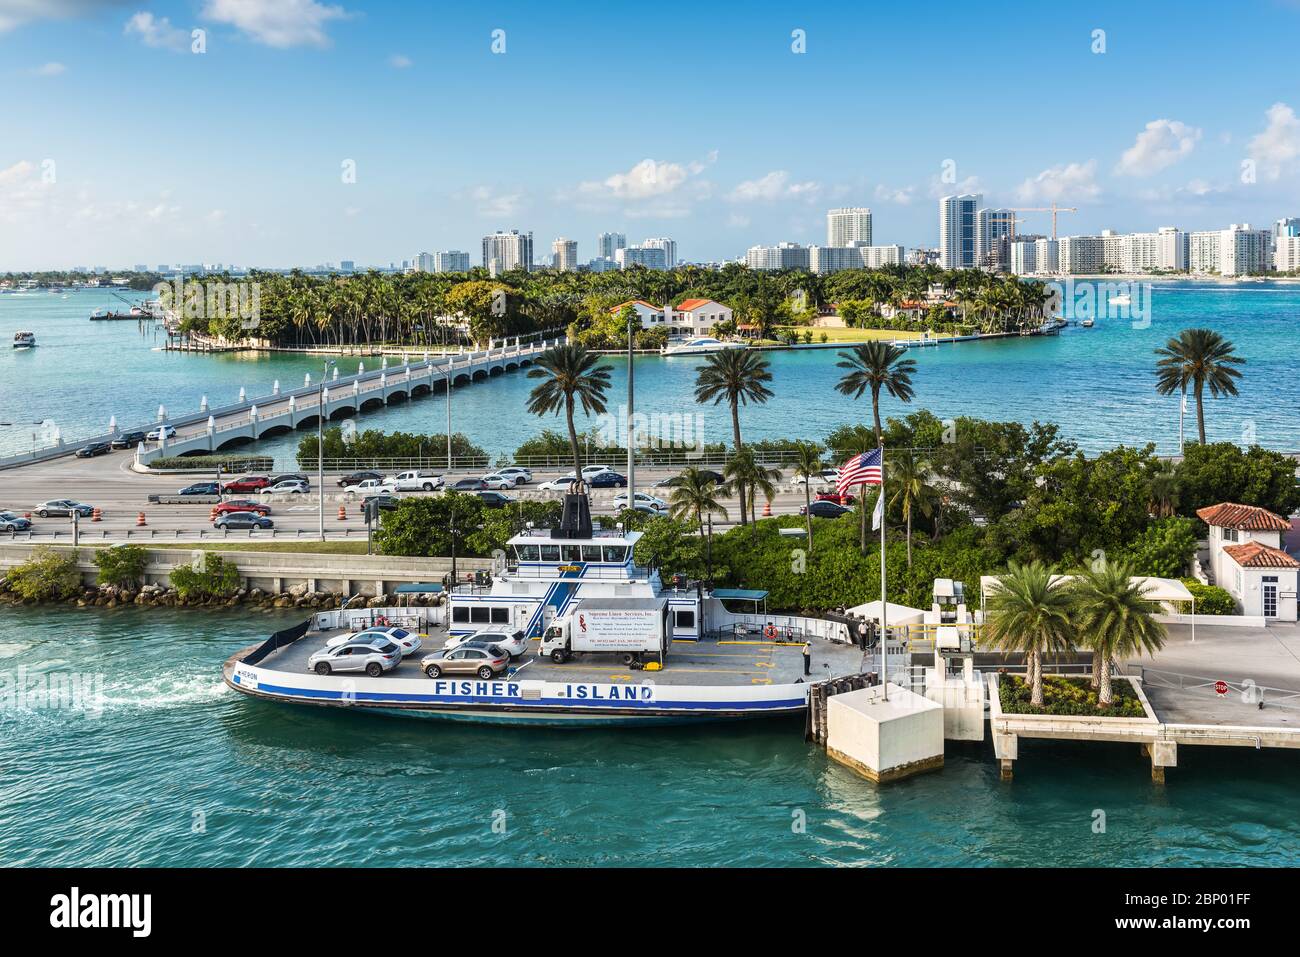 Miami, FL, États-Unis - 28 avril 2019 : vue sur Star Island et le ferry de Fisher Island à Biscayne Bay à Miami, Floride, États-Unis d'Amérique Banque D'Images